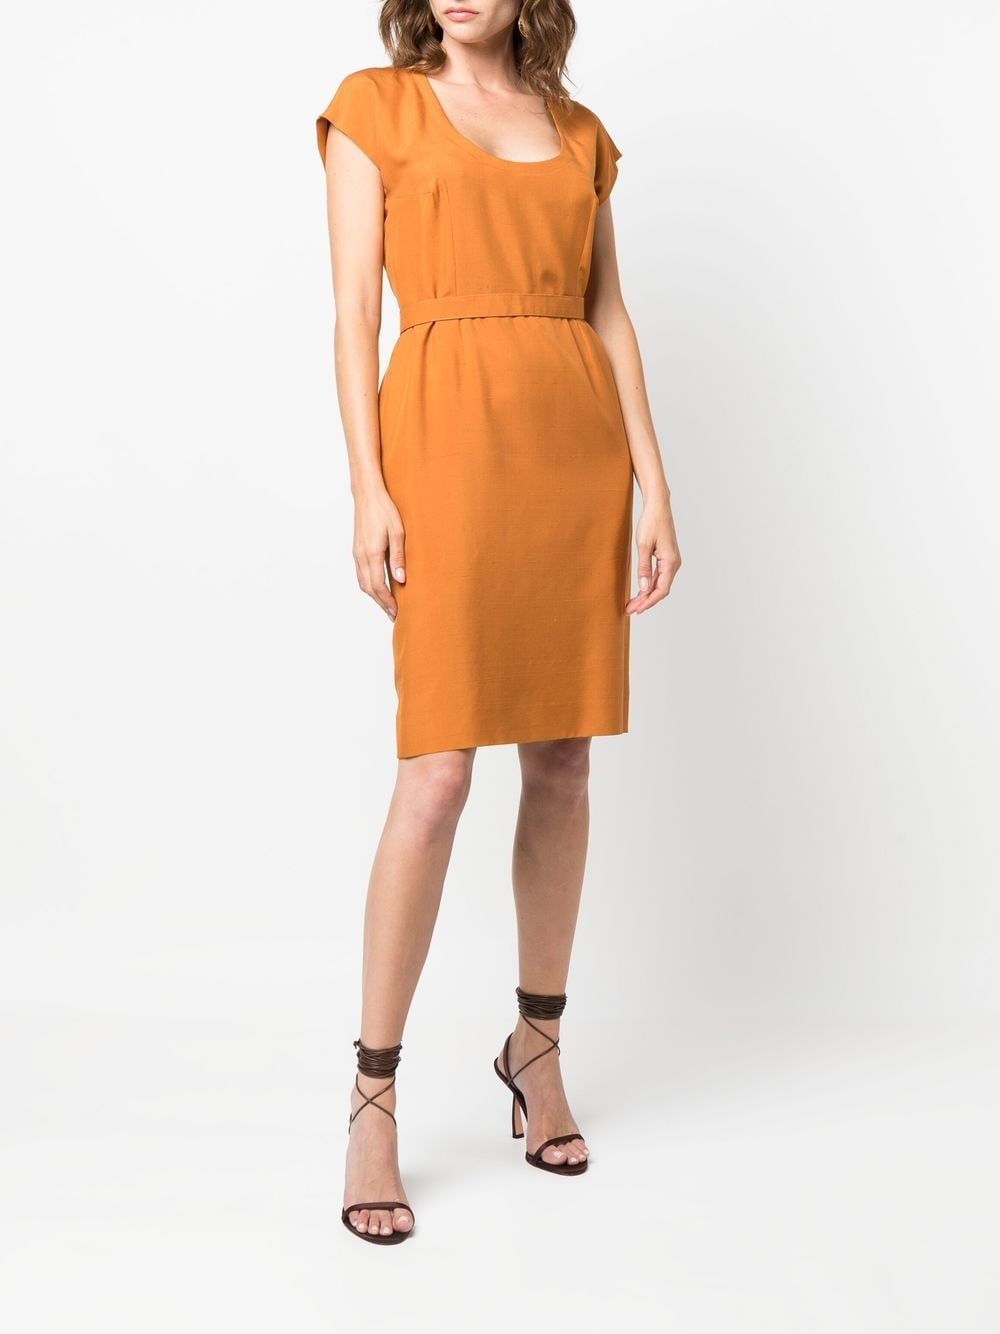 Yves Saint Laurent Pre-Owned 1980s zijden jurk - Oranje